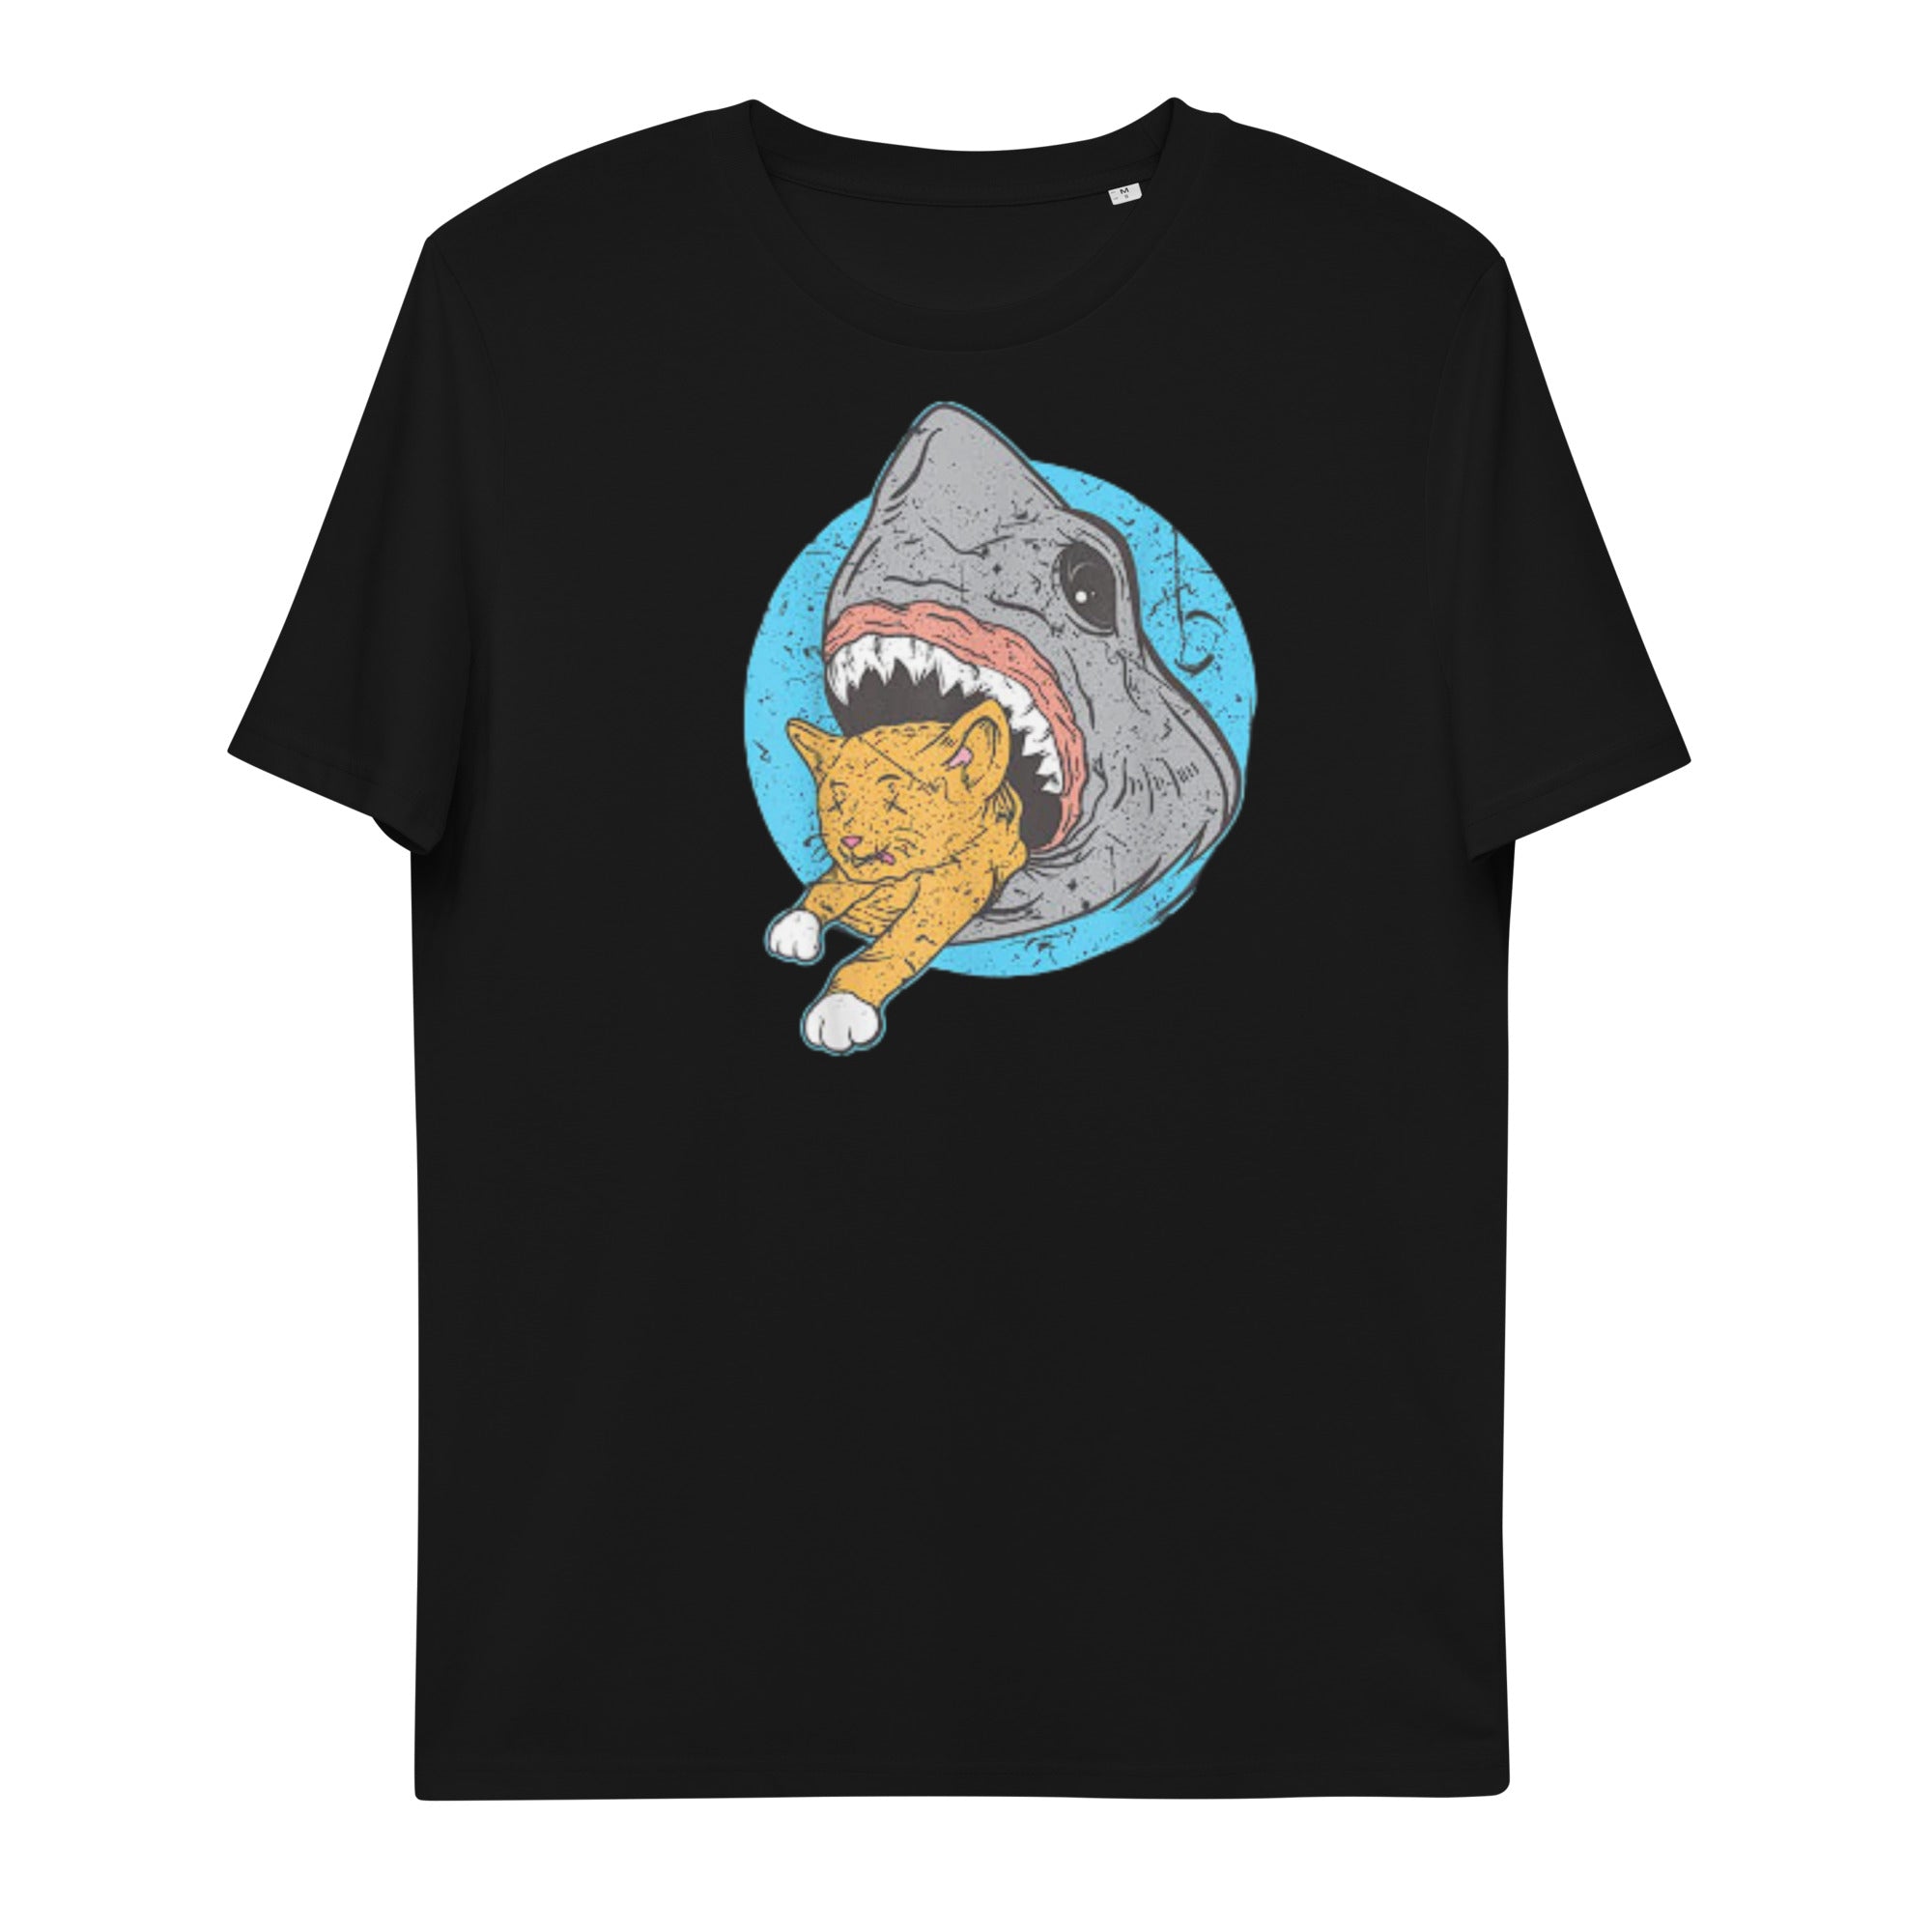 Shark Eating cat shirt - Black / S